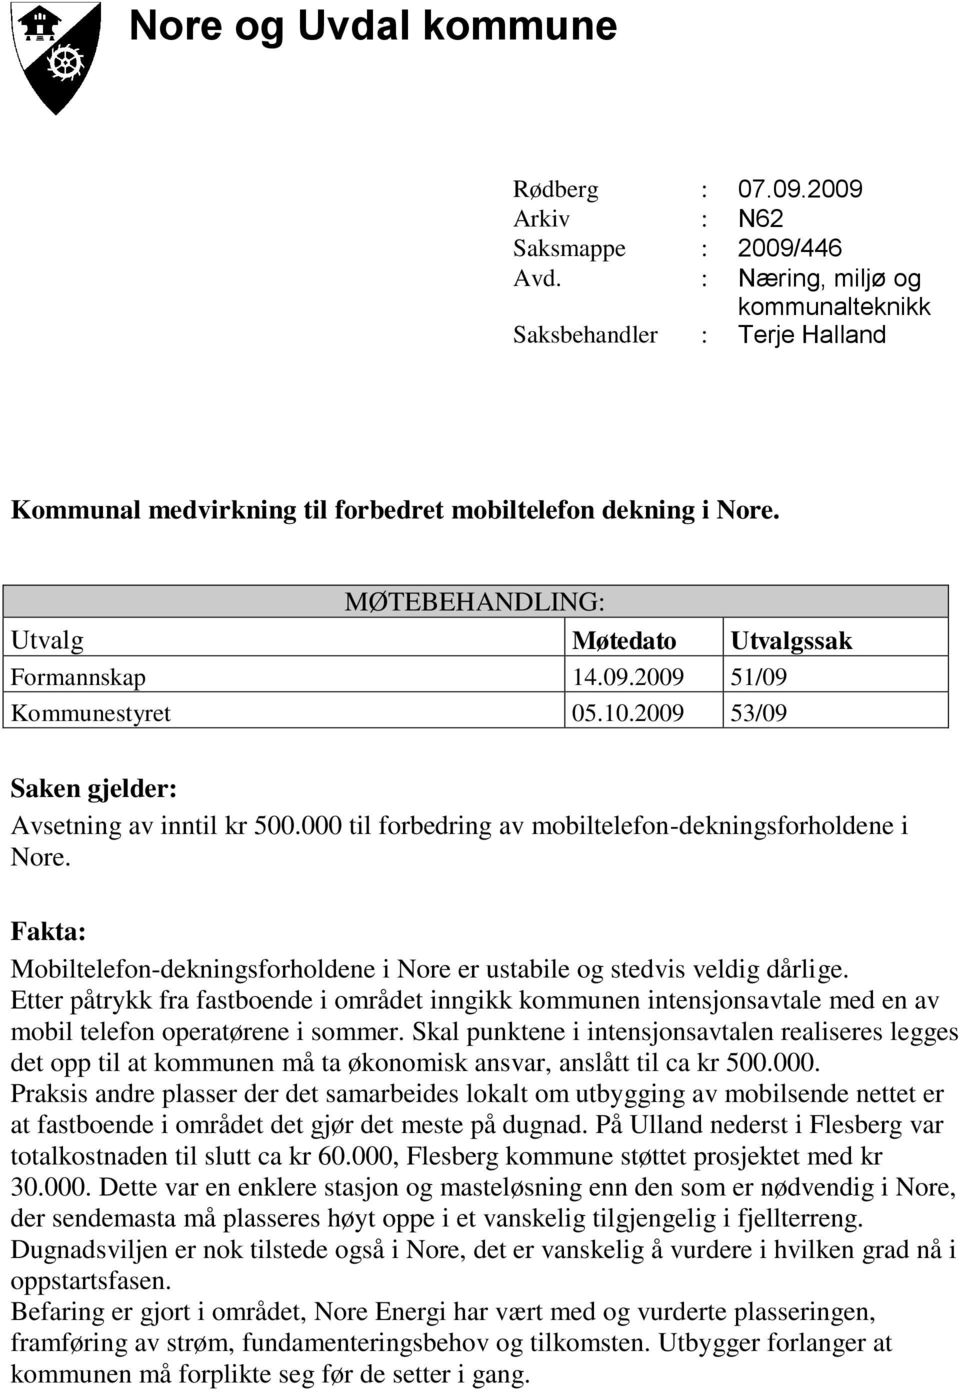 2009 51/09 Kommunestyret 05.10.2009 53/09 Saken gjelder: Avsetning av inntil kr 500.000 til forbedring av mobiltelefon-dekningsforholdene i Nore.